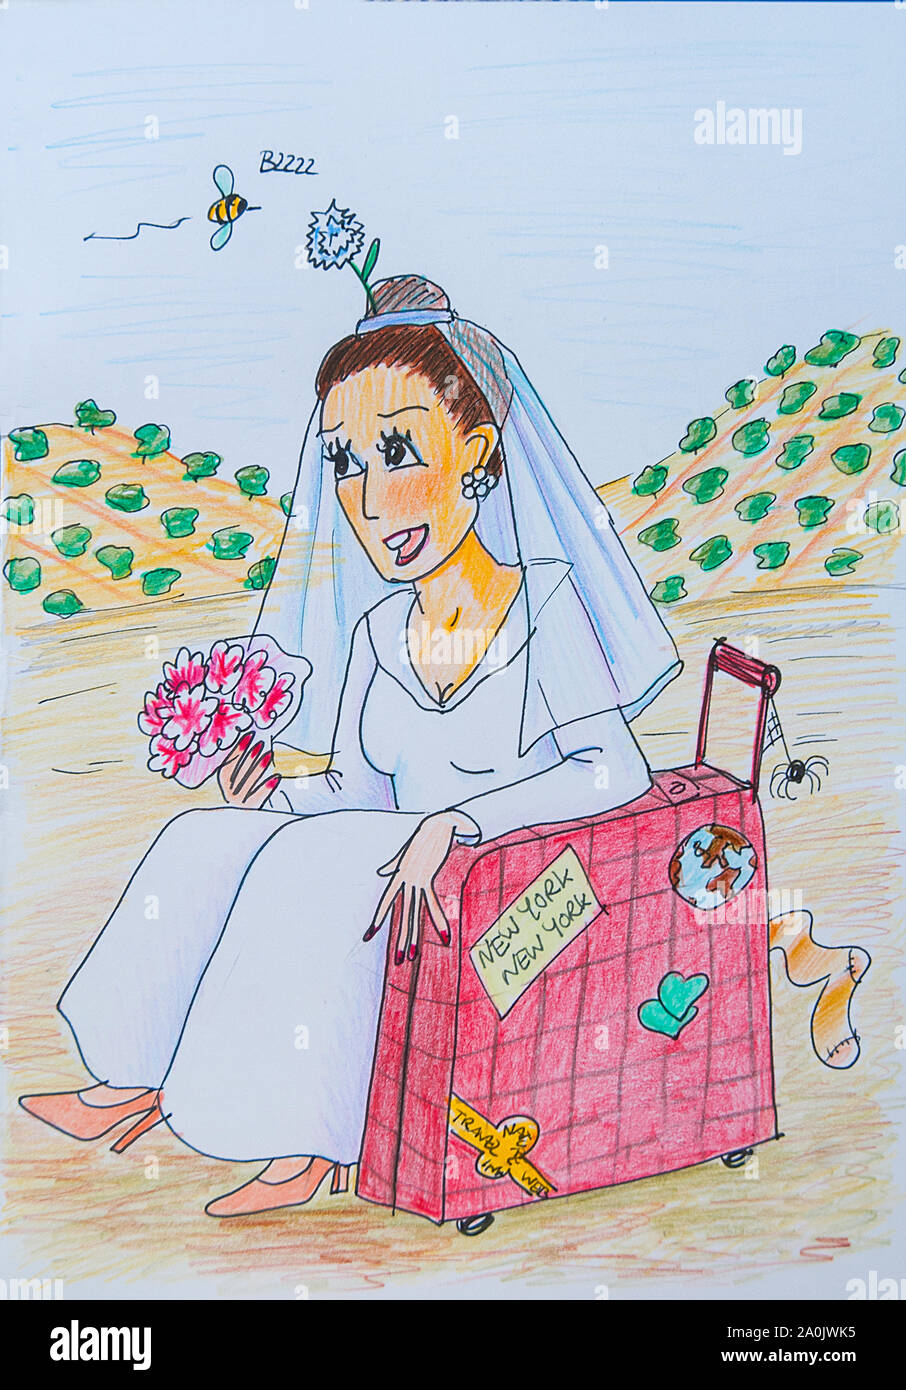 Bride sitting dans la campagne avec une valise. L'illustration. Banque D'Images